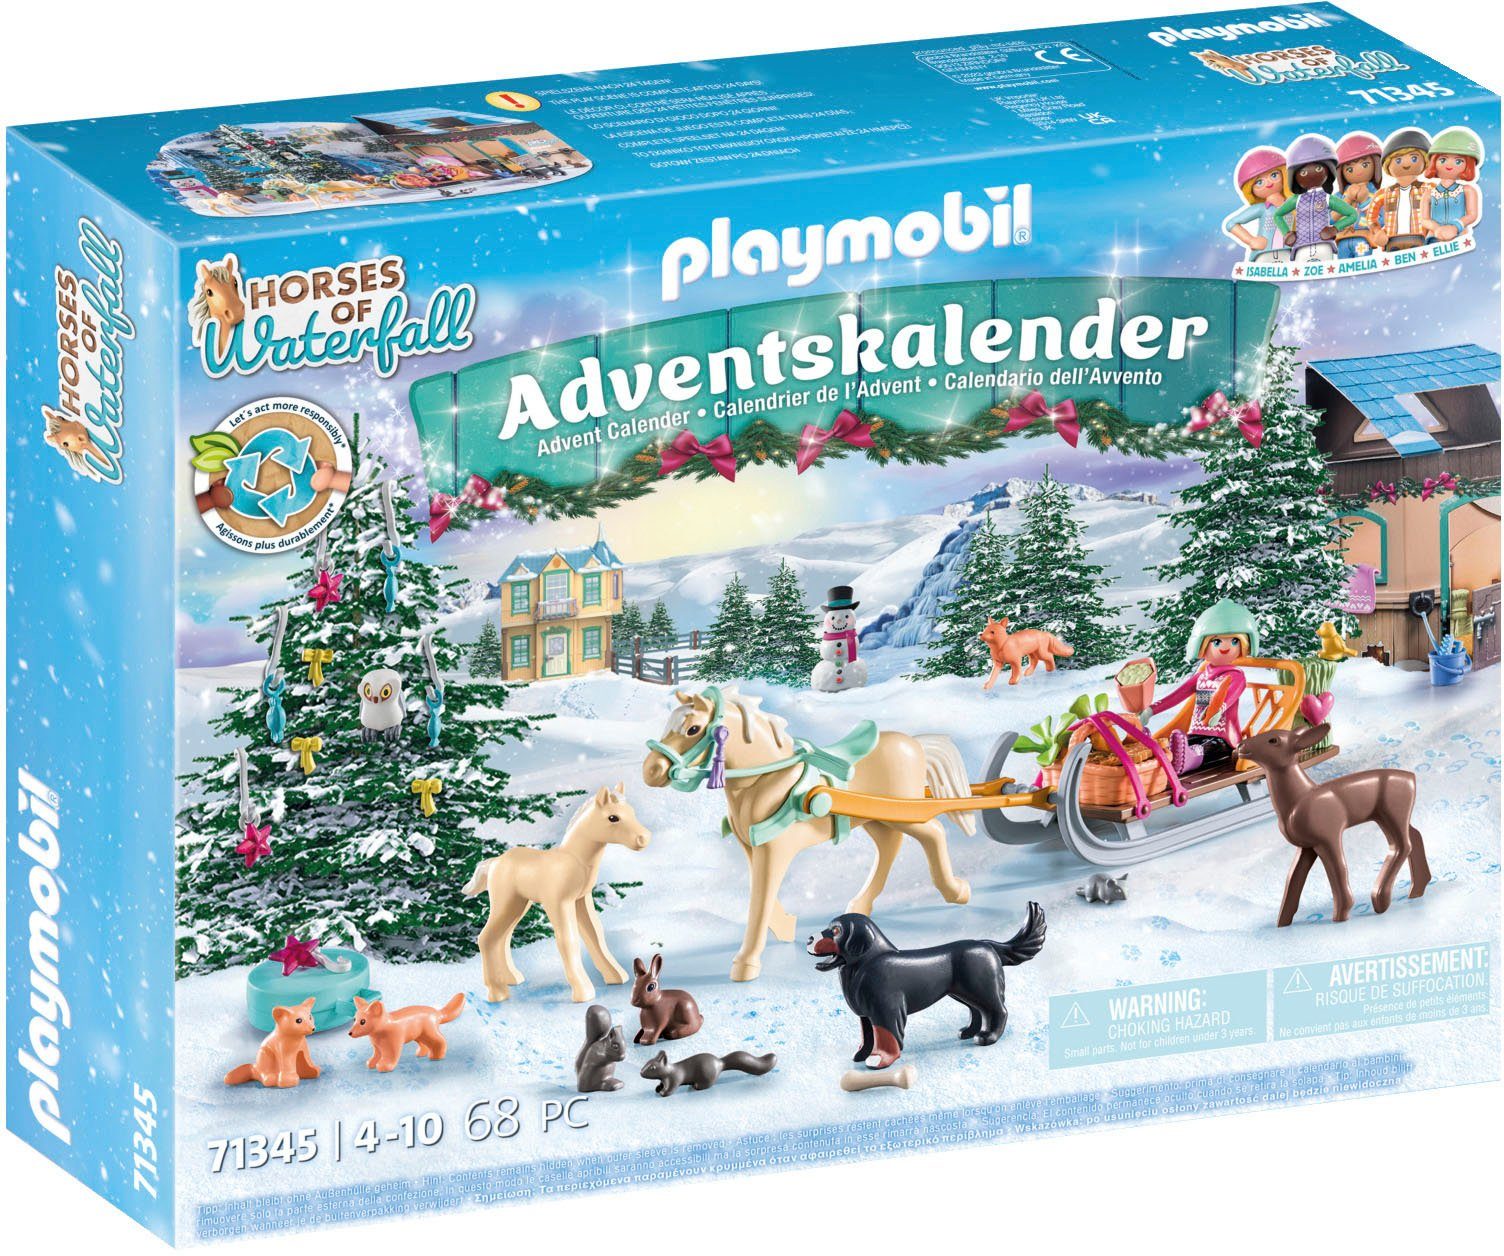 teilweise Horses Pferde: aus of Material Playmobil® Waterfall; Schlittenfahrt Spielzeug-Adventskalender (71345), recyceltem Spielbausteine,